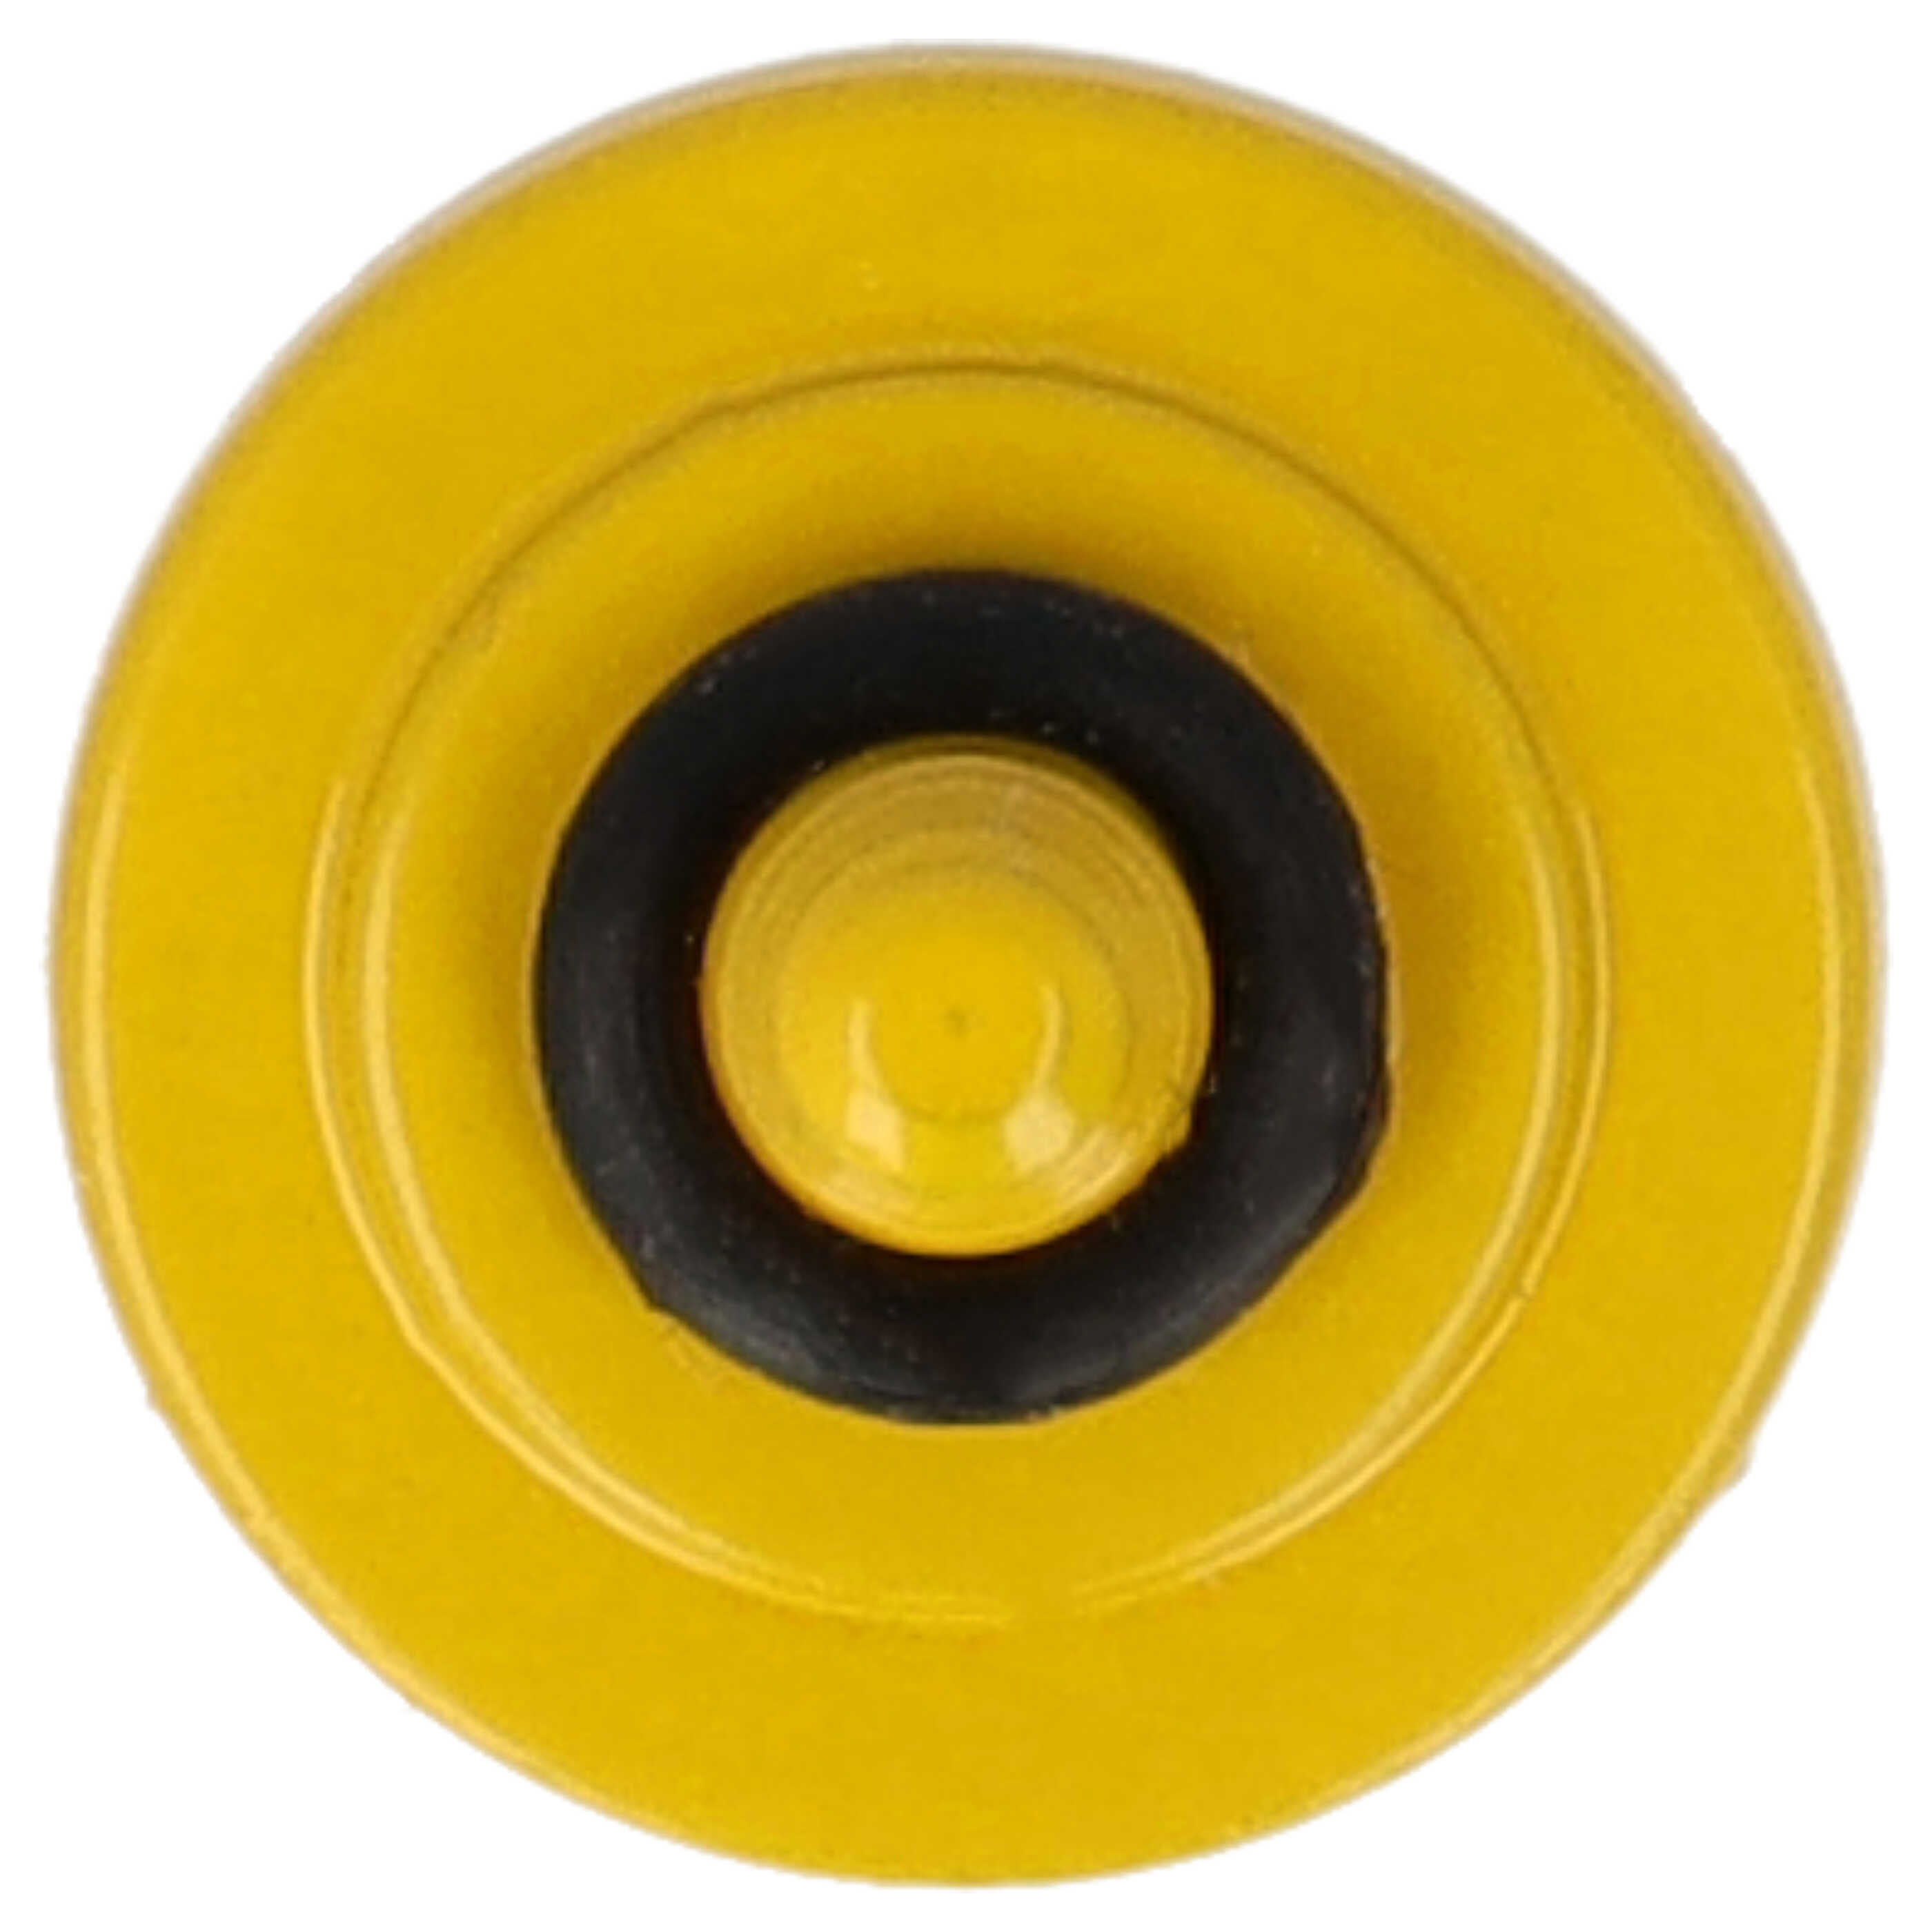 Przycisk spustu migawki do aparatu X-E1 Fujifilm - metal, żółty